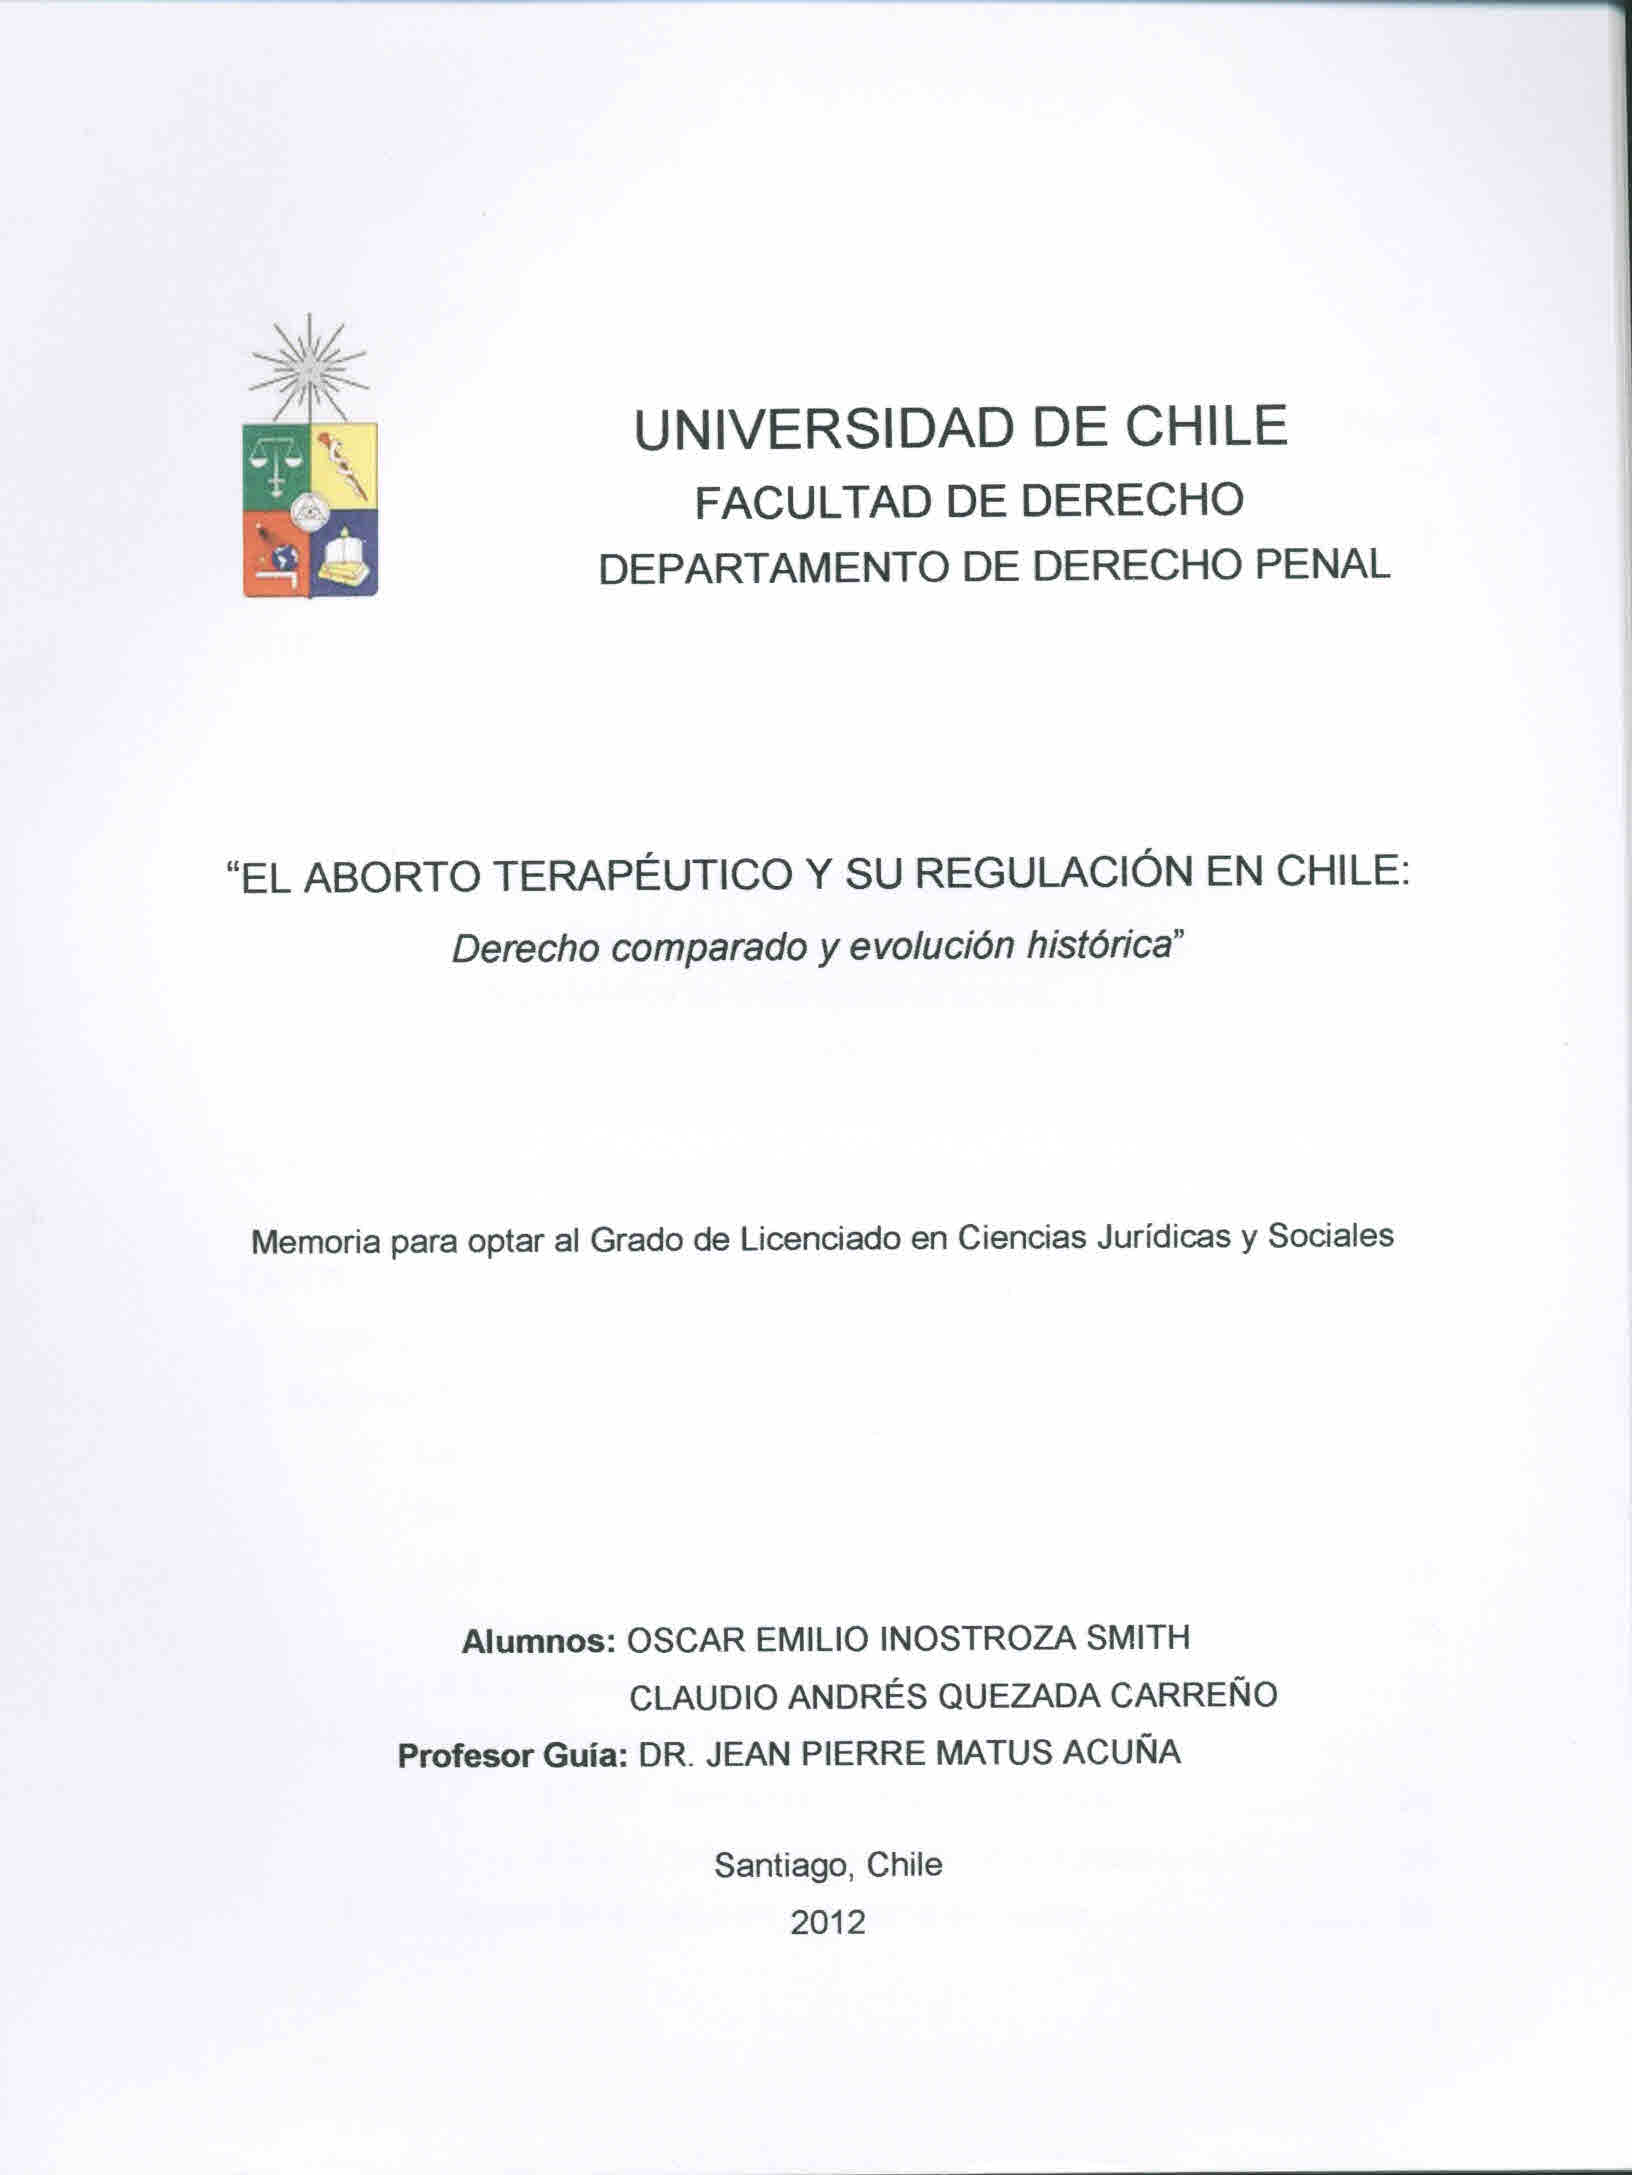 El aborto terapéutico y su regulación en Chile : derecho comparado y evolución histórica
